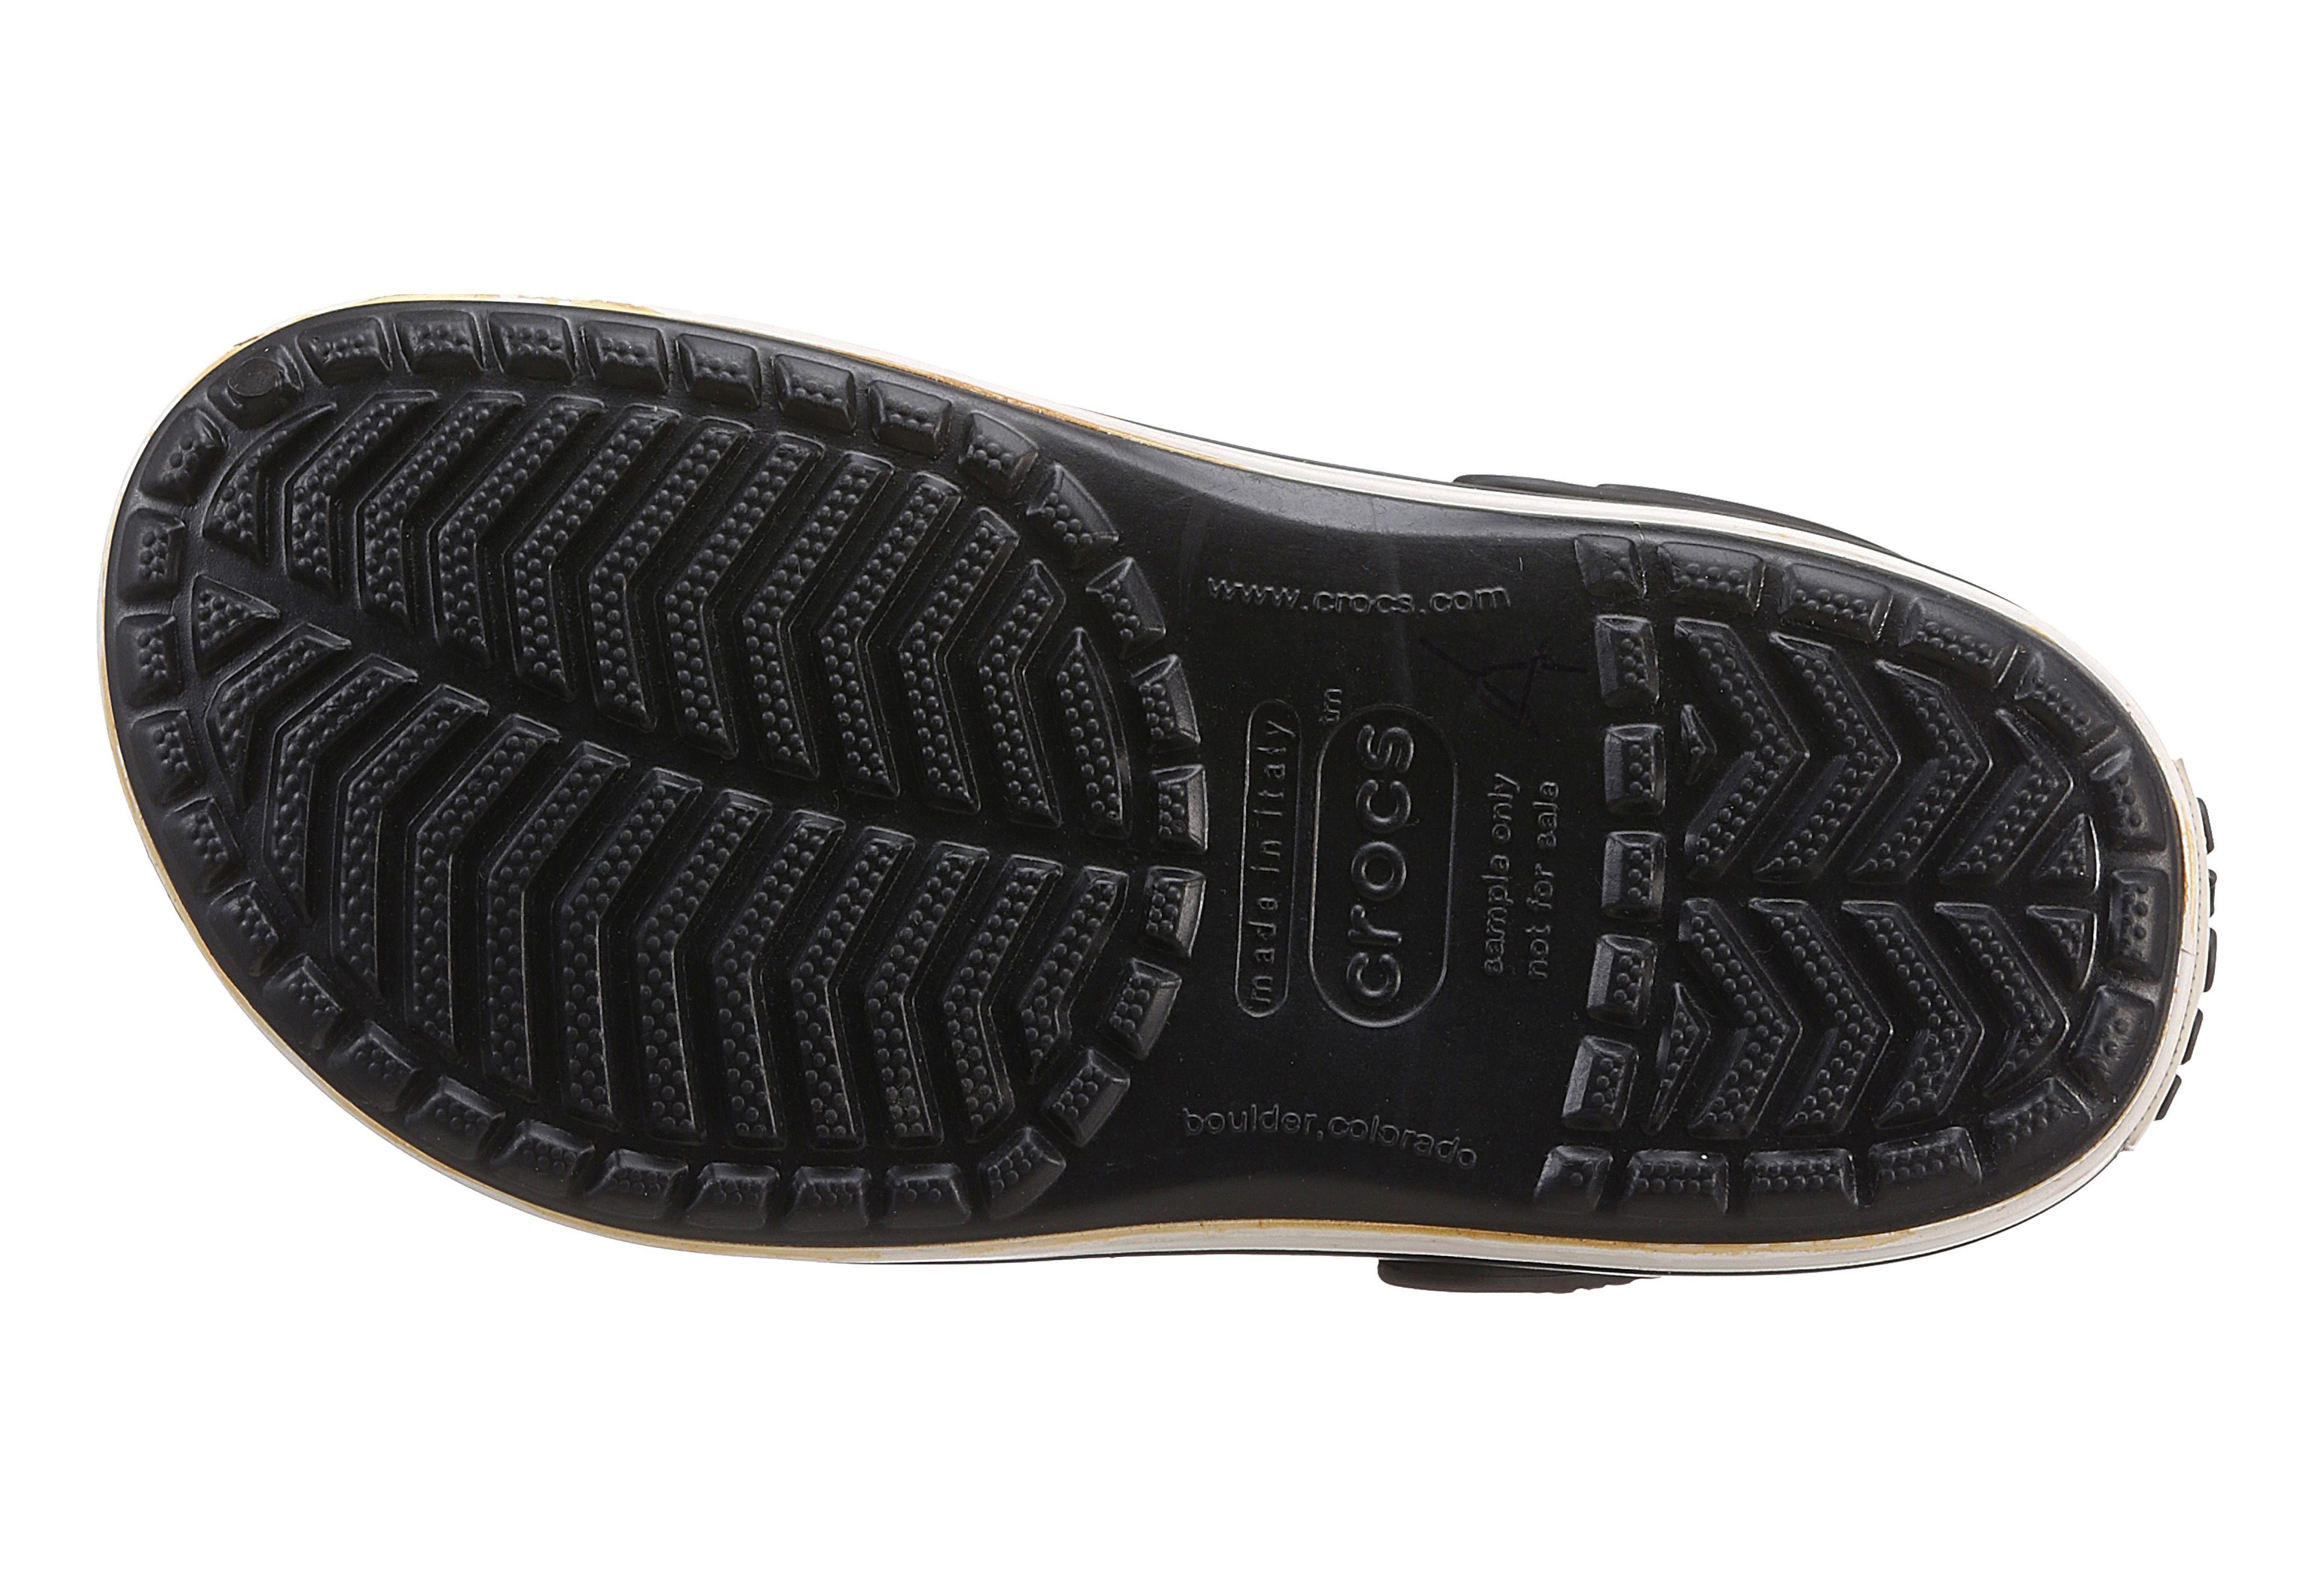 Laufsohle Crocband Crocs Clog farbiger mit schwarz-weiß